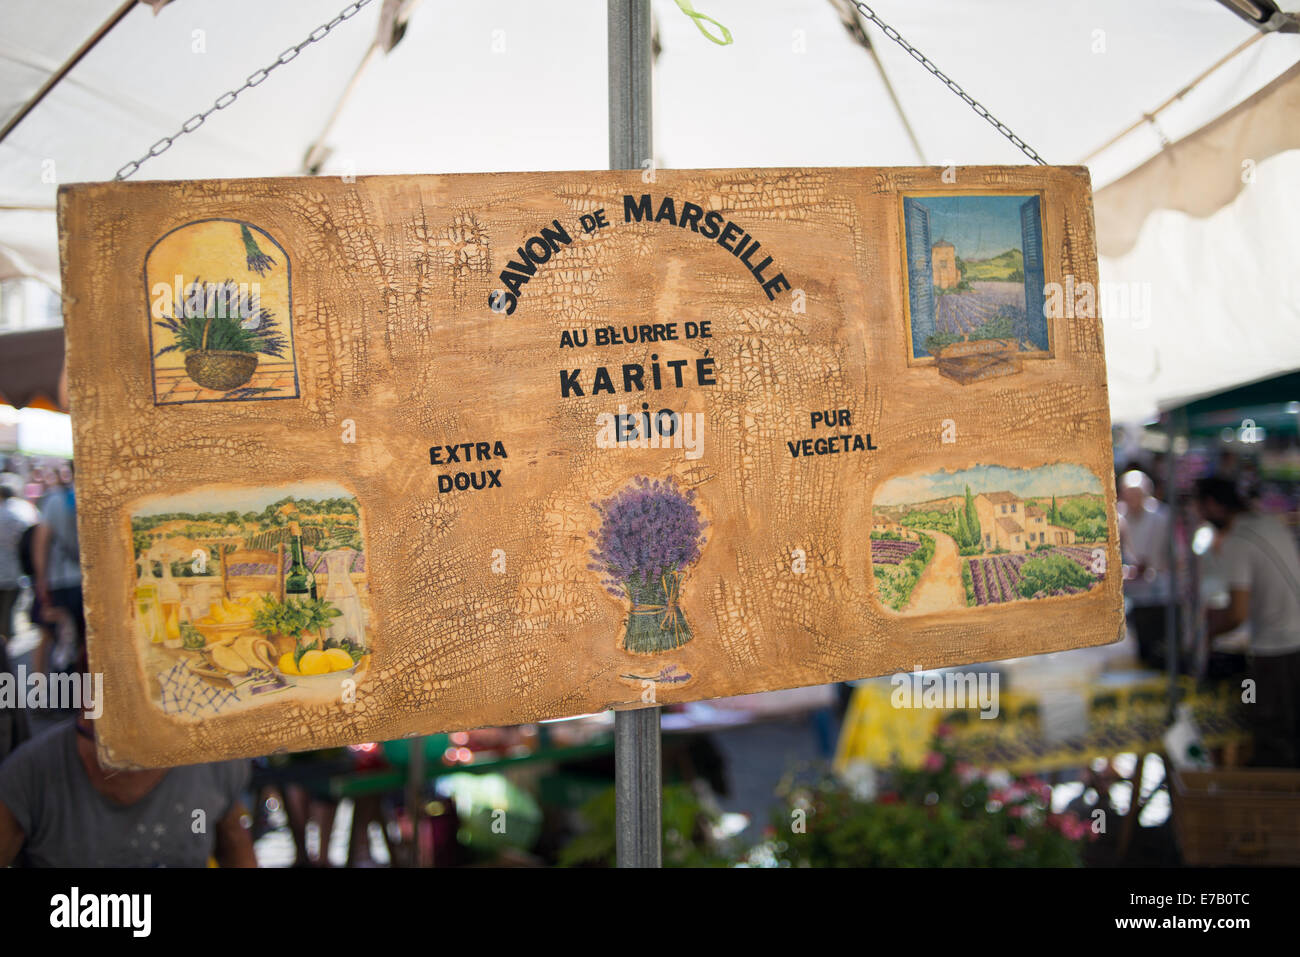 Savon de Marseille - lokal hergestellte Seife auf dem Display an einem Samstag Markt, Beaune, Bourgogne, Frankreich Stockfoto